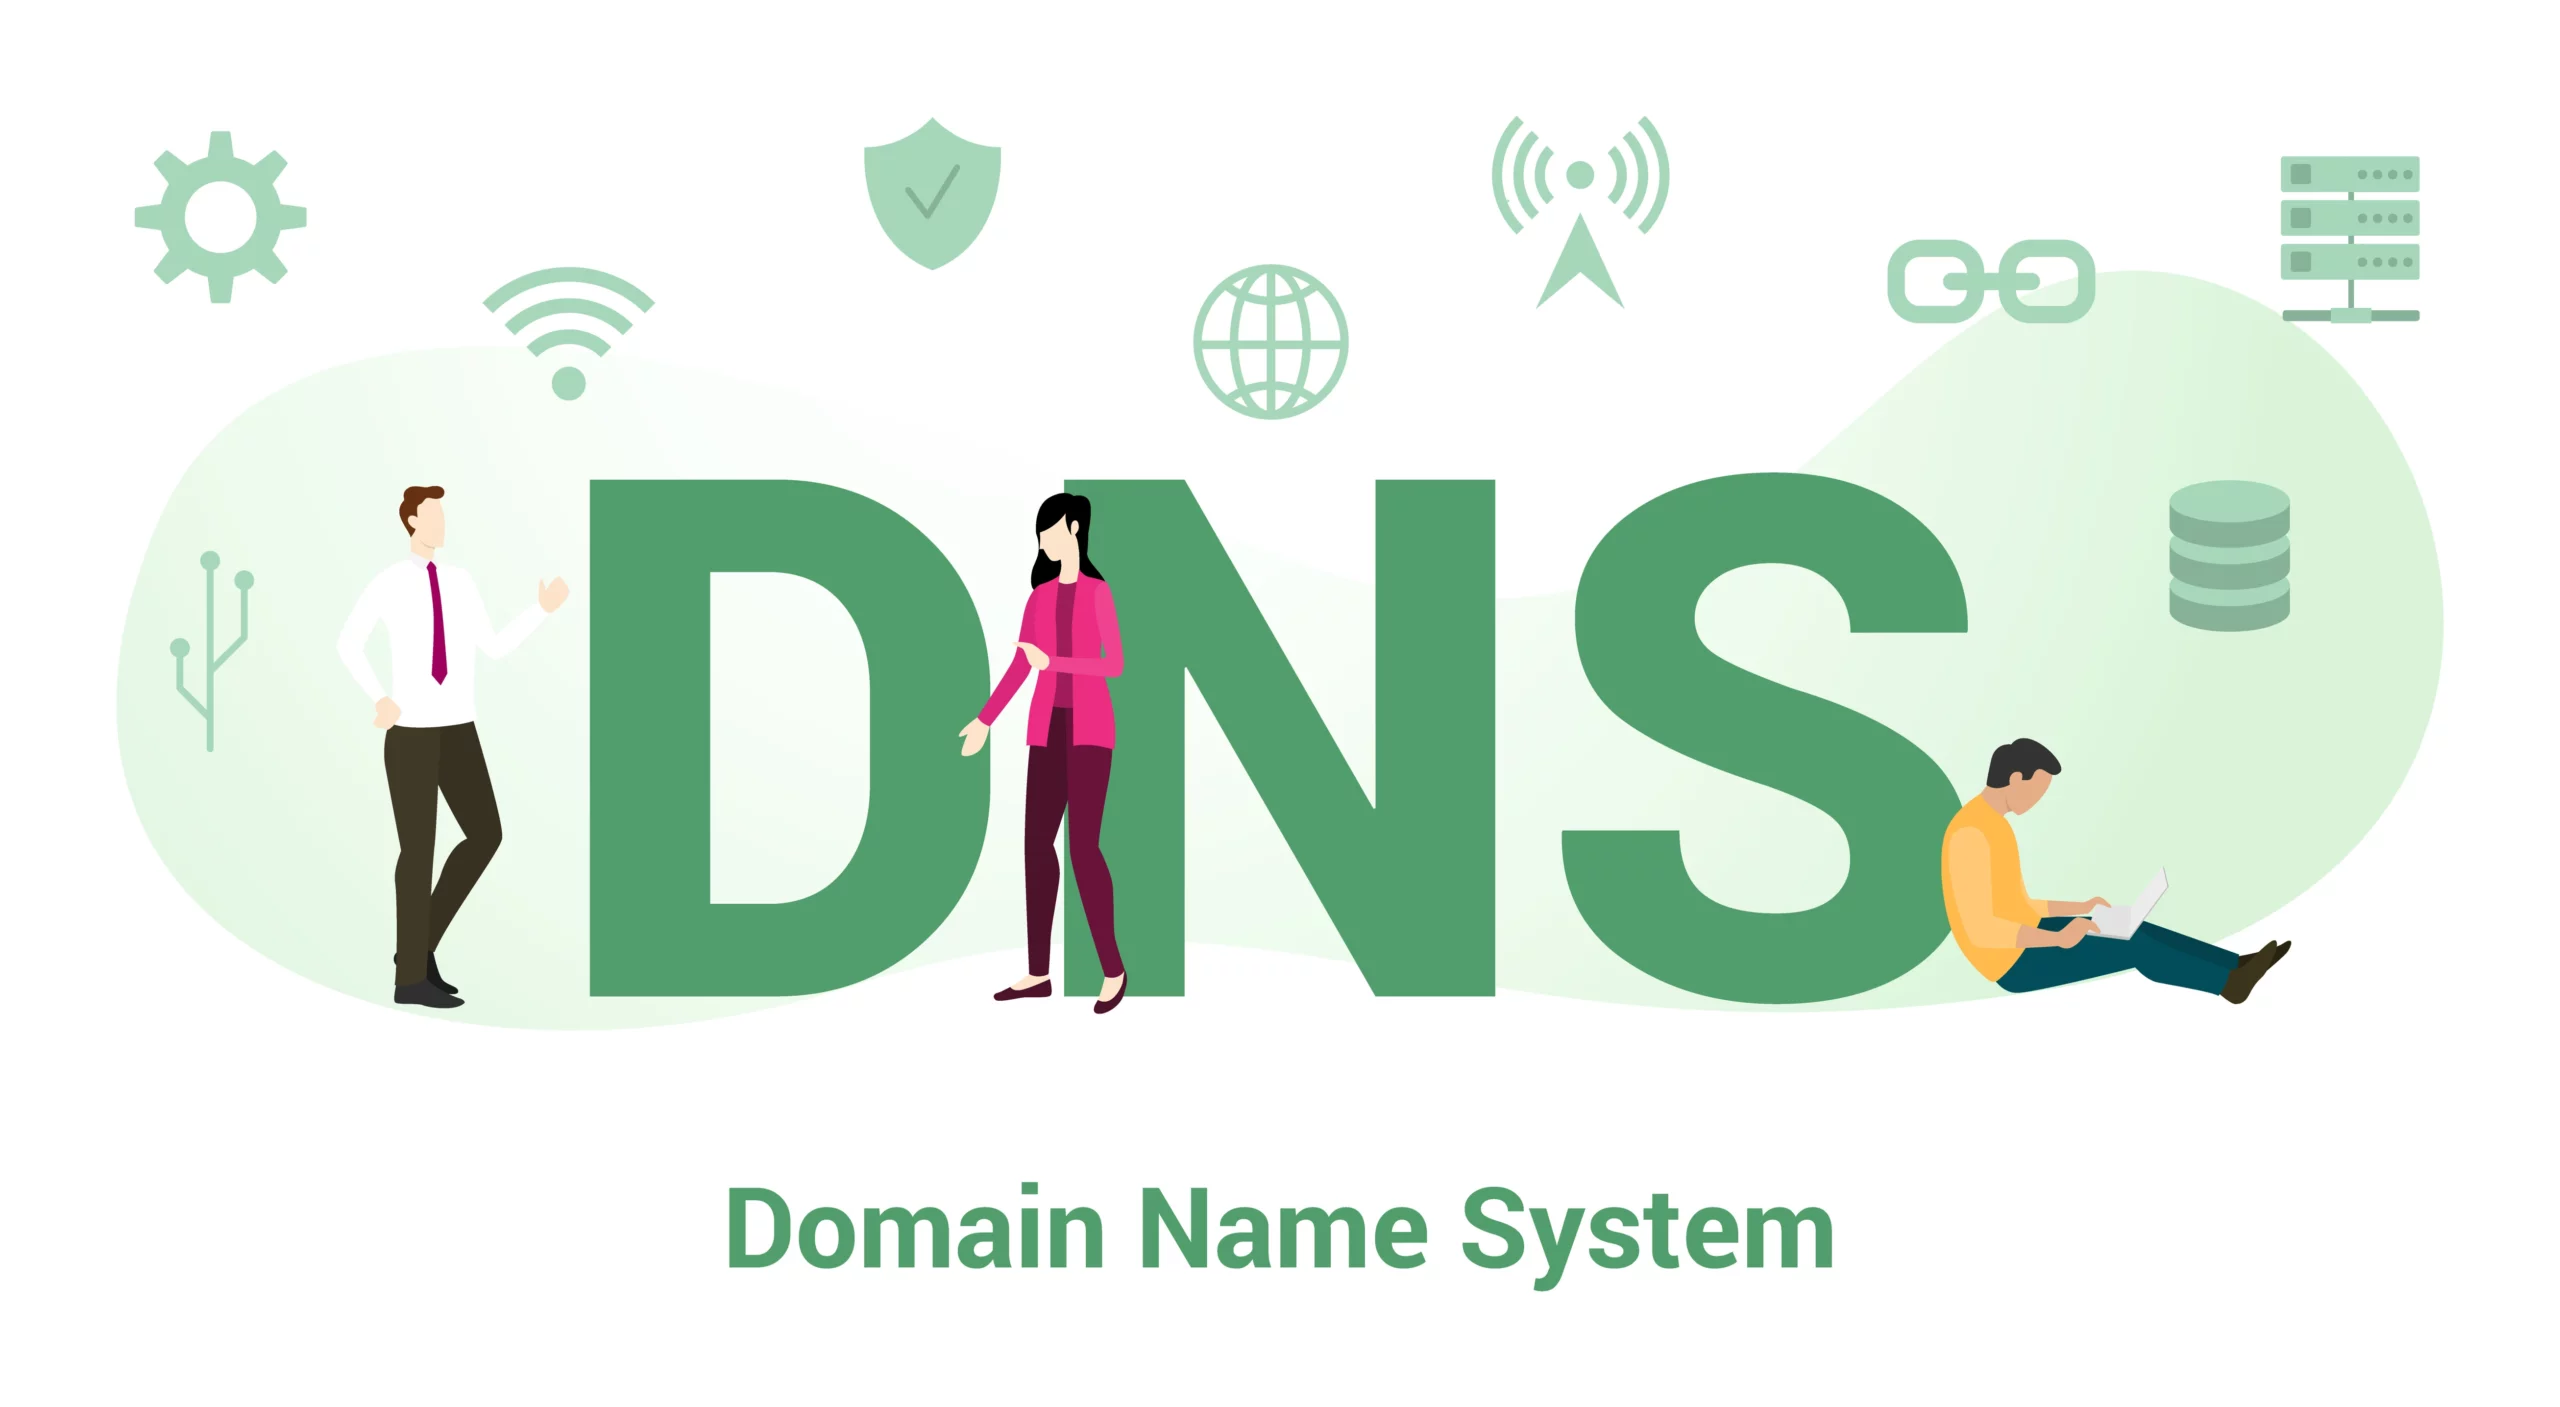 DNS écrit en vert et en dessous "Domain Name System"